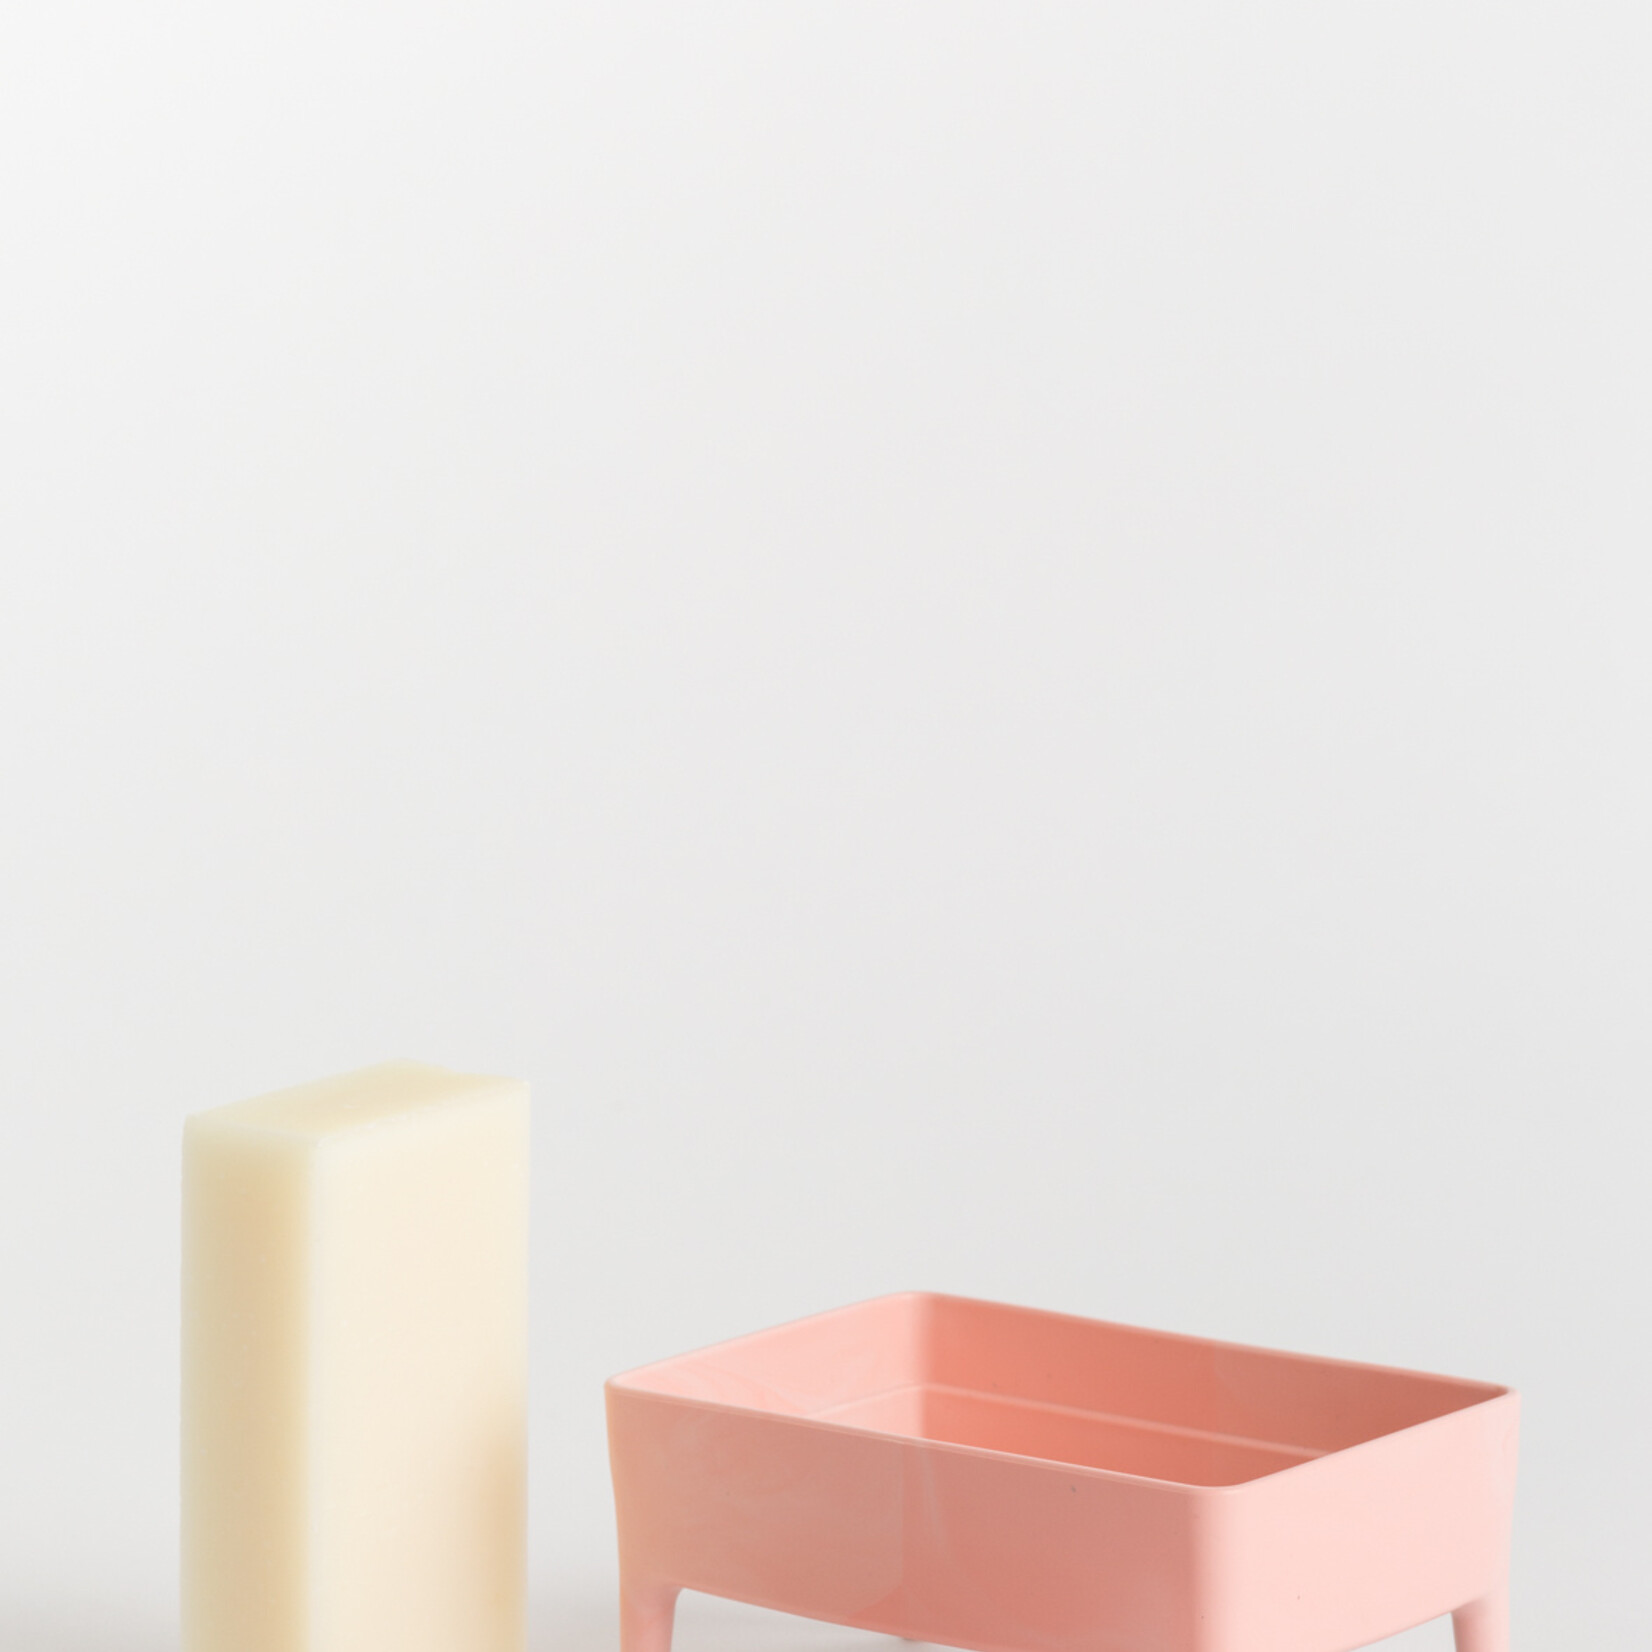 Foekje Fleur Foekje Fleur - Bubble Buddy kit Lemon soap - millenial pink